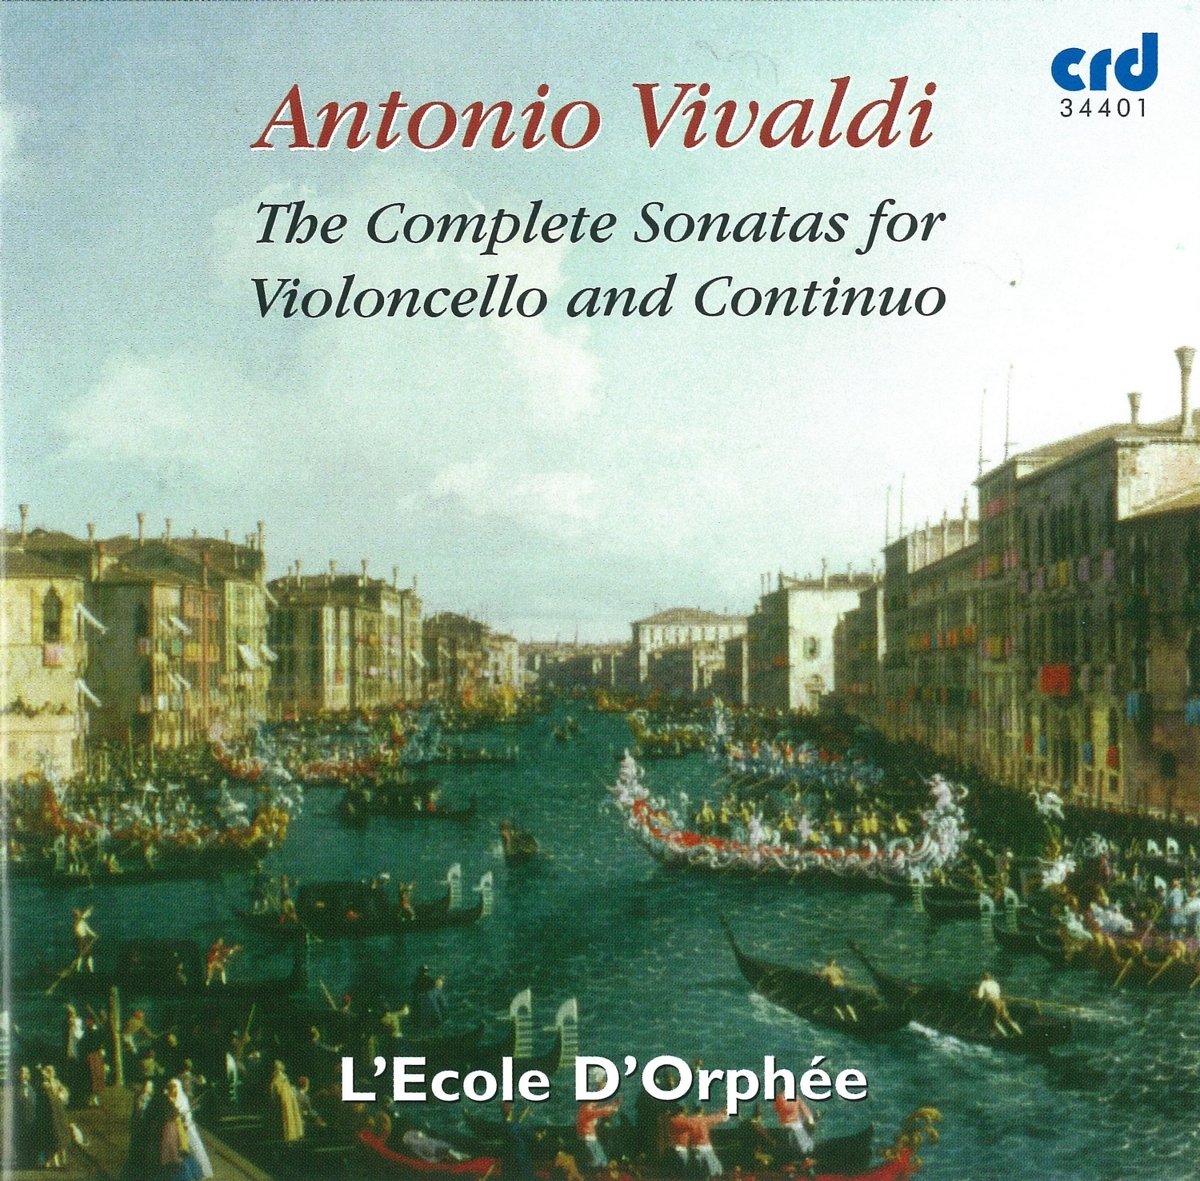 VIVALDI: The Complete Sonatas For Violoncello & Continuo - L'Ecole d'Orphee (2 CDs)